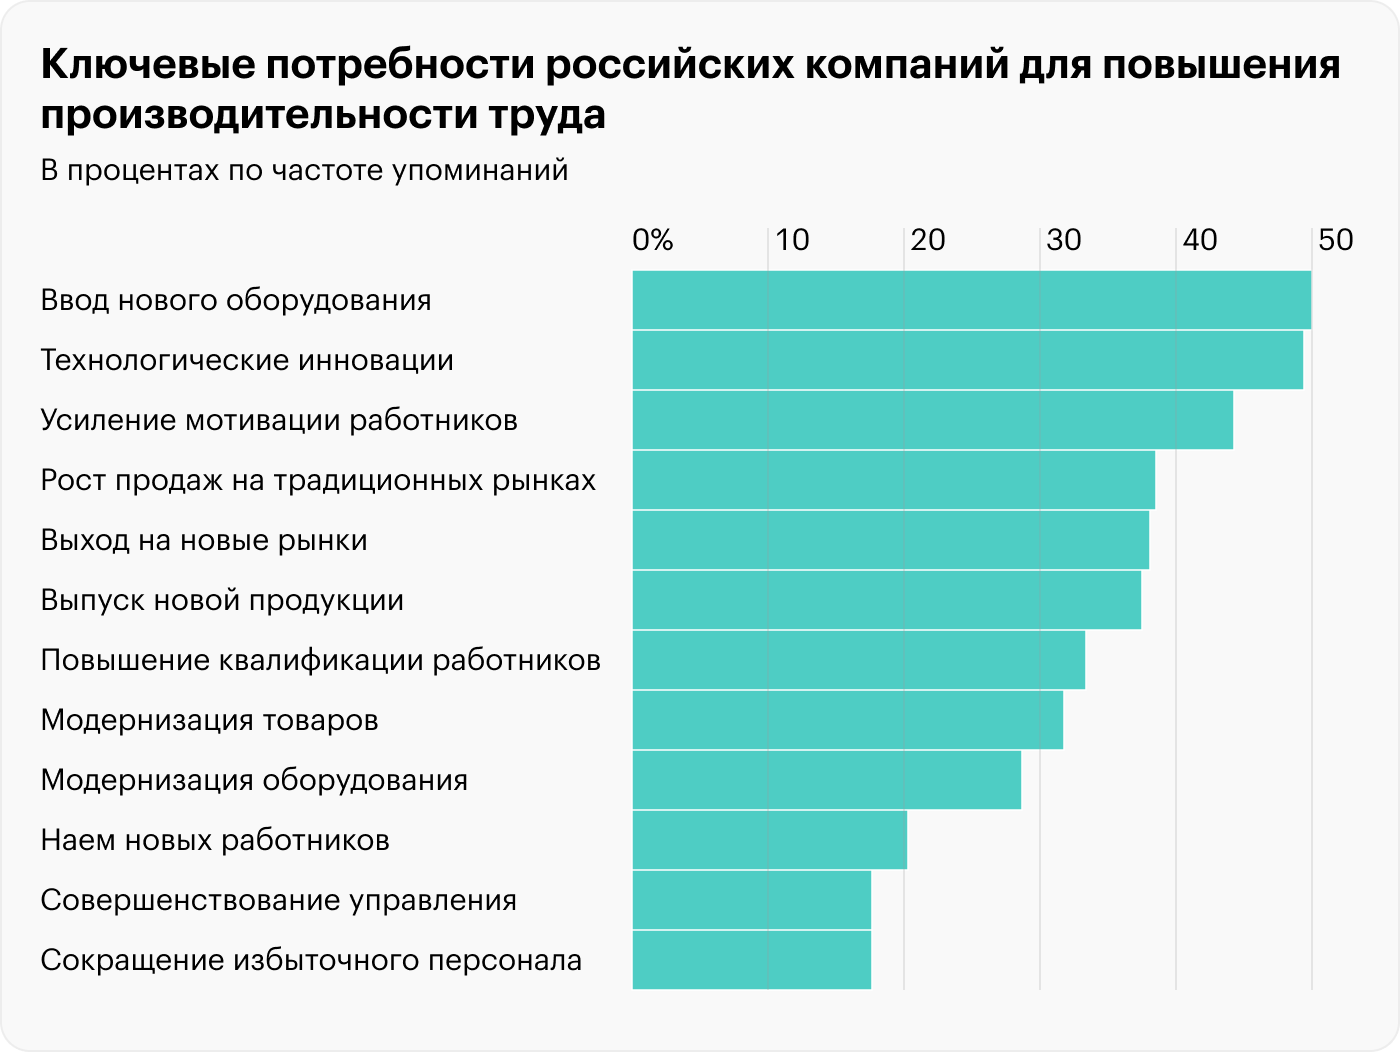 Внедрение новых технологий в России считают более перспективным, чем совершенствование управления. А повышение мотивированности работников — важнее роста их квалификации. Источник: НИУ ВШЭ